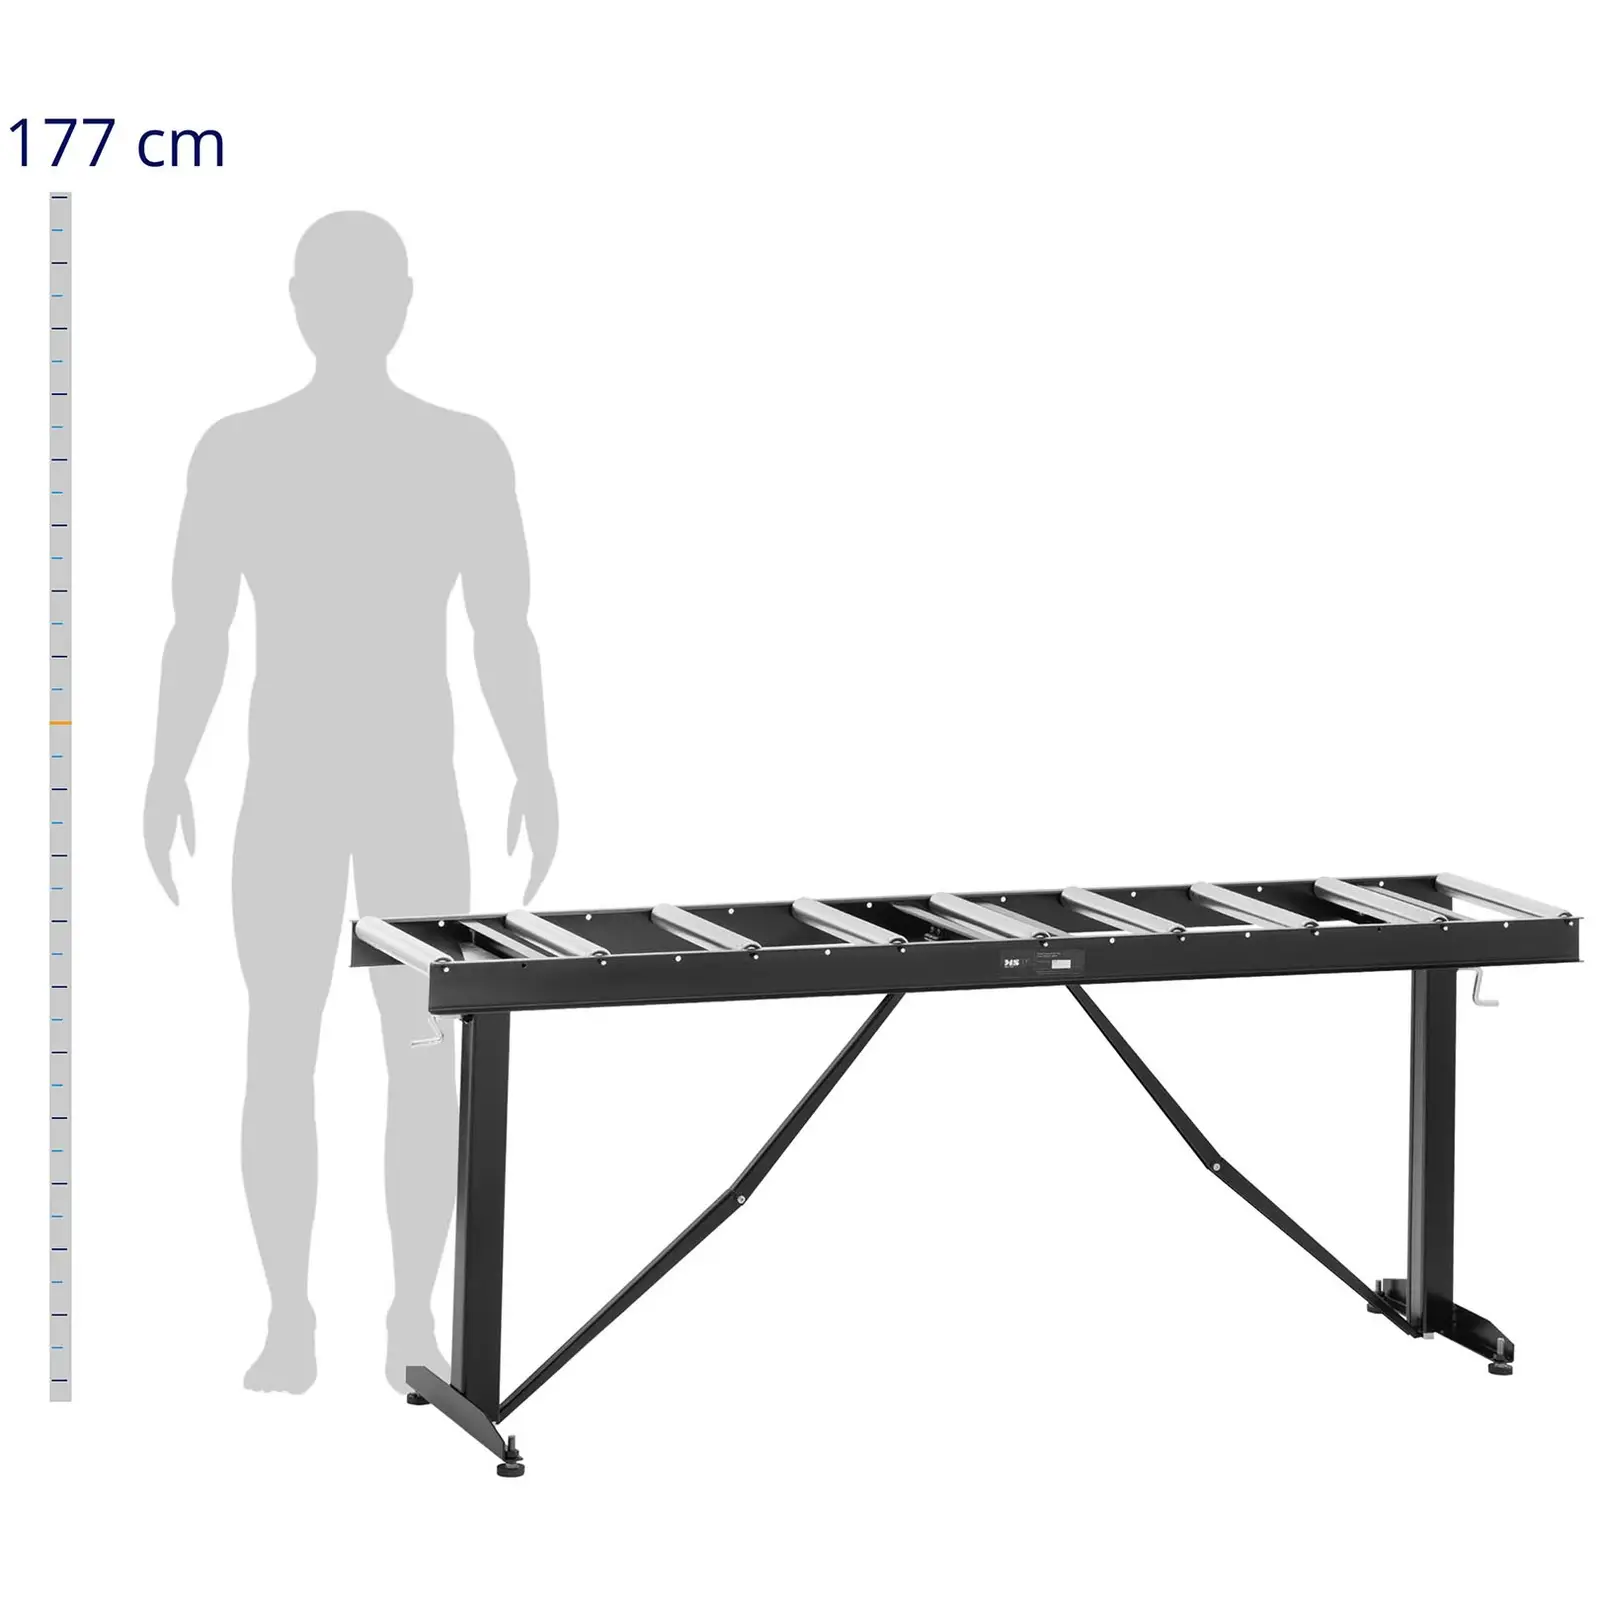 Valčekový dopravník - 200 kg - 167 x 35 cm - počet koliesok: 9 - výškovo nastaviteľný